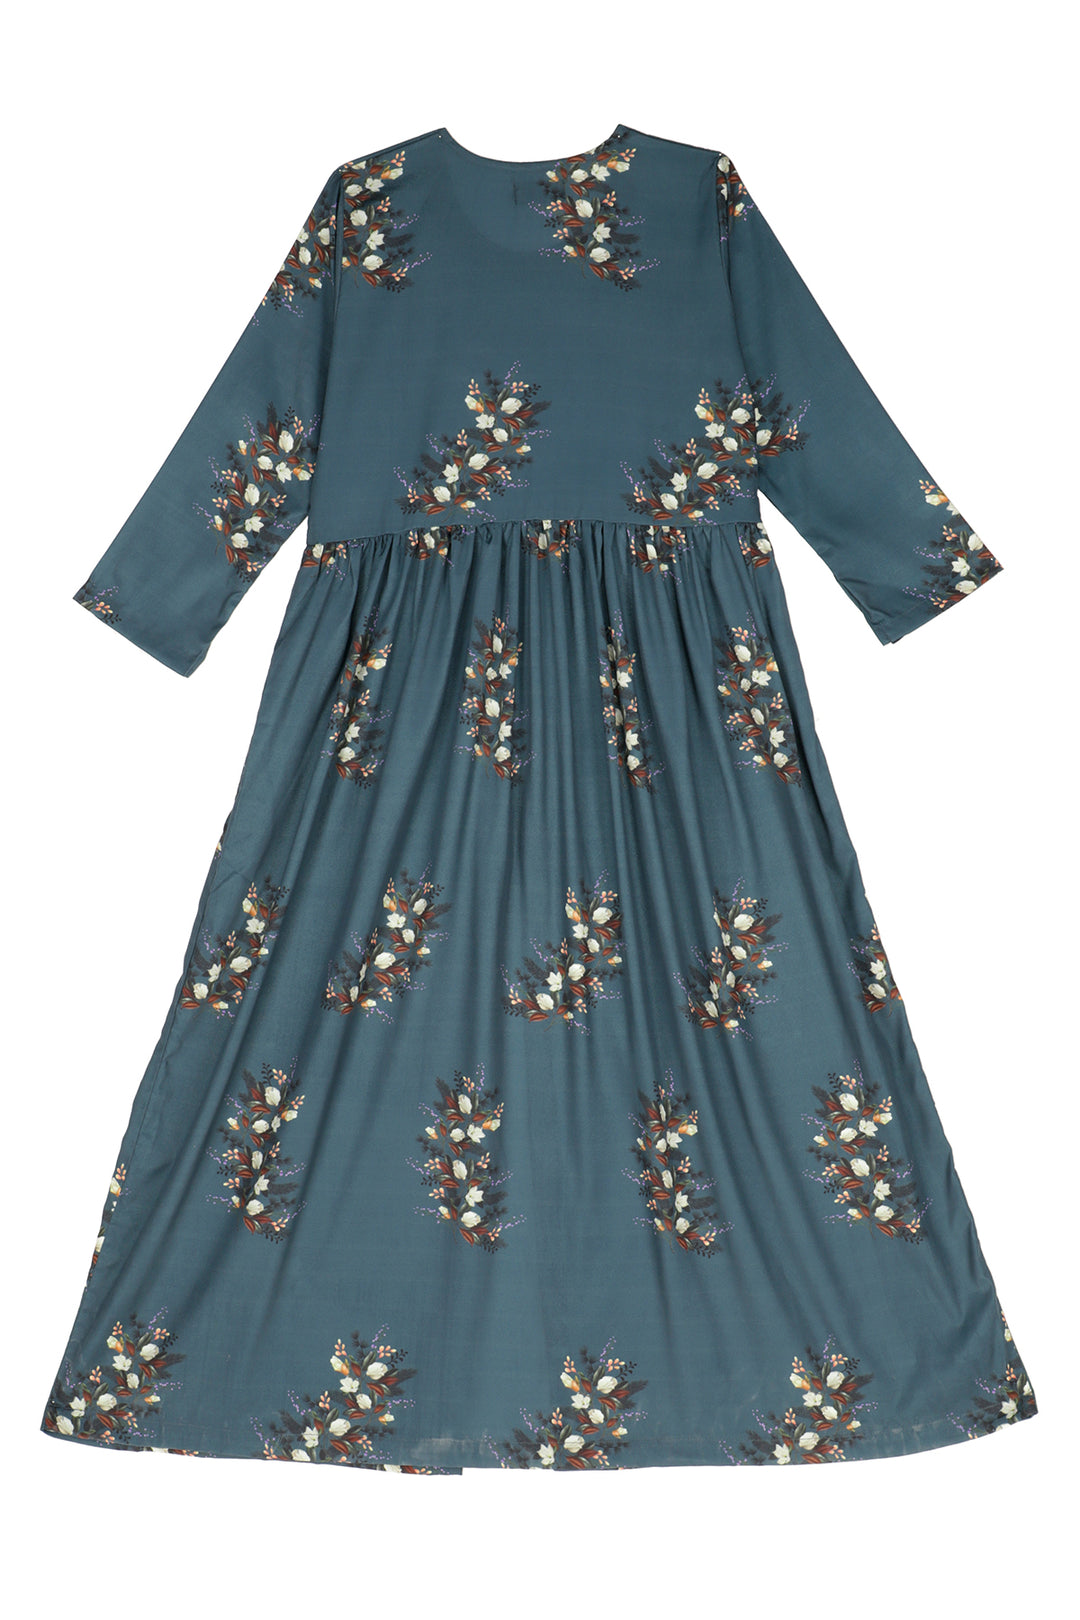 Slit Cut Floral Dress - A21 - WD00004